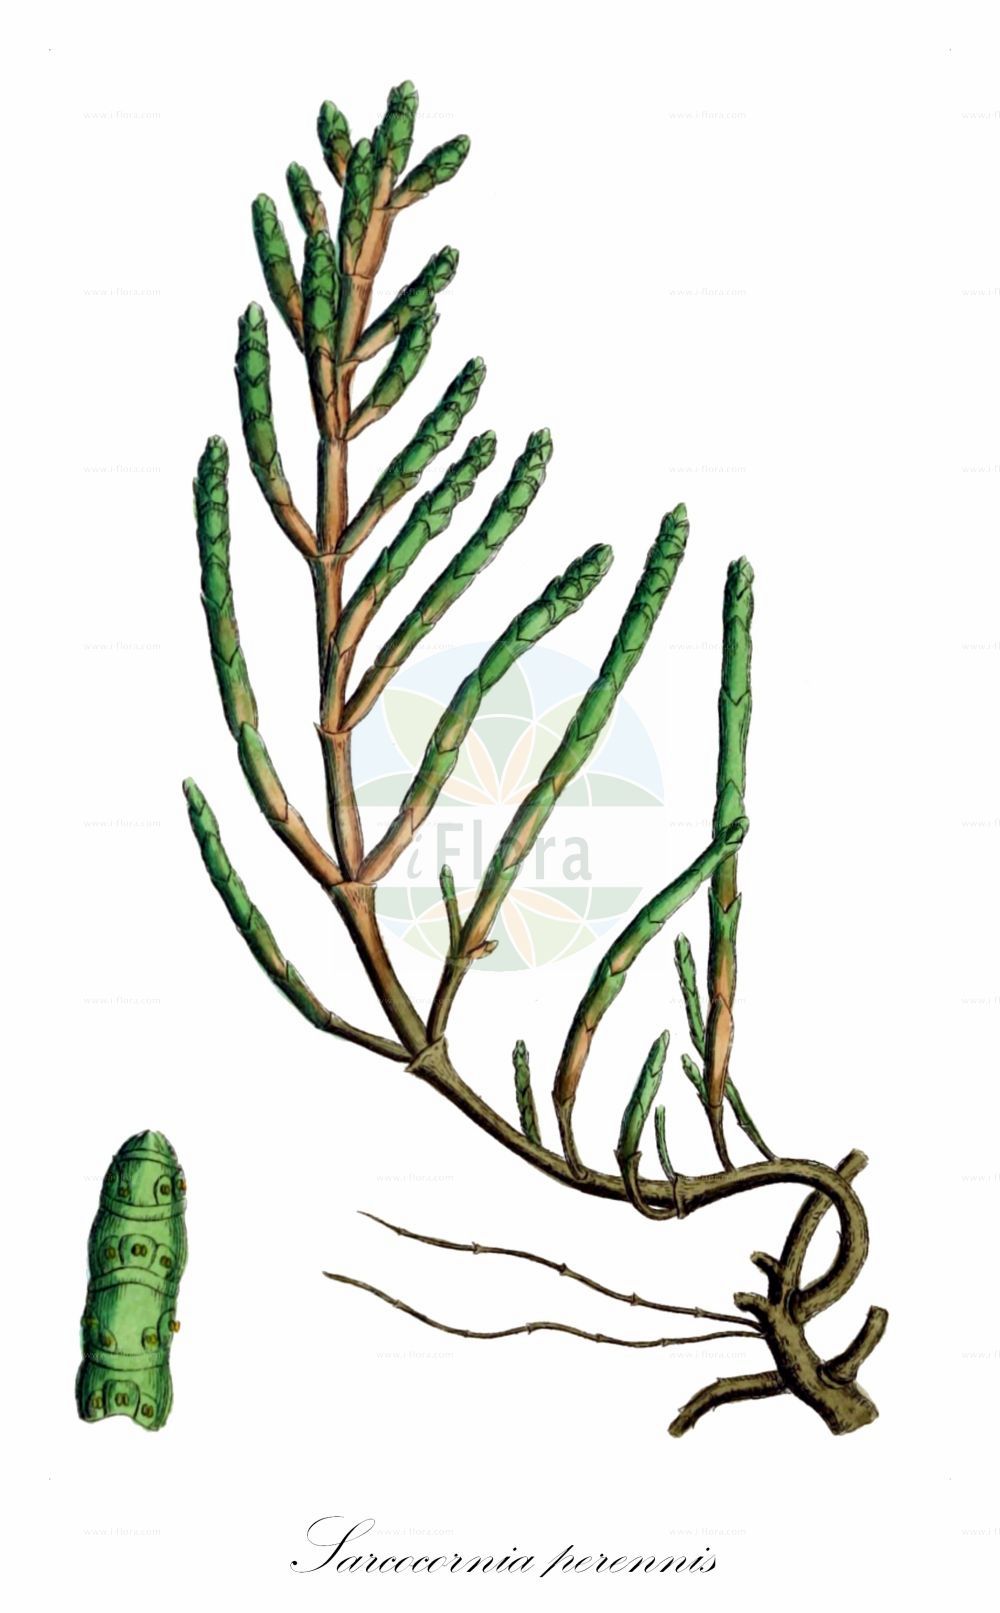 Historische Abbildung von Sarcocornia perennis (Perennial Glasswort). Das Bild zeigt Blatt, Bluete, Frucht und Same. ---- Historical Drawing of Sarcocornia perennis (Perennial Glasswort). The image is showing leaf, flower, fruit and seed.(Sarcocornia perennis,Perennial Glasswort,Arthrocnemum perenne,Salicornia lignosa,Salicornia longispicata,Salicornia perennis,Salicornia radicans,Sarcocornia perennis,Sarcocornia,Amaranthaceae,Fuchsschwanzgewächse,Pigweed family,Blatt,Bluete,Frucht,Same,leaf,flower,fruit,seed,Sowerby (1790-1813))